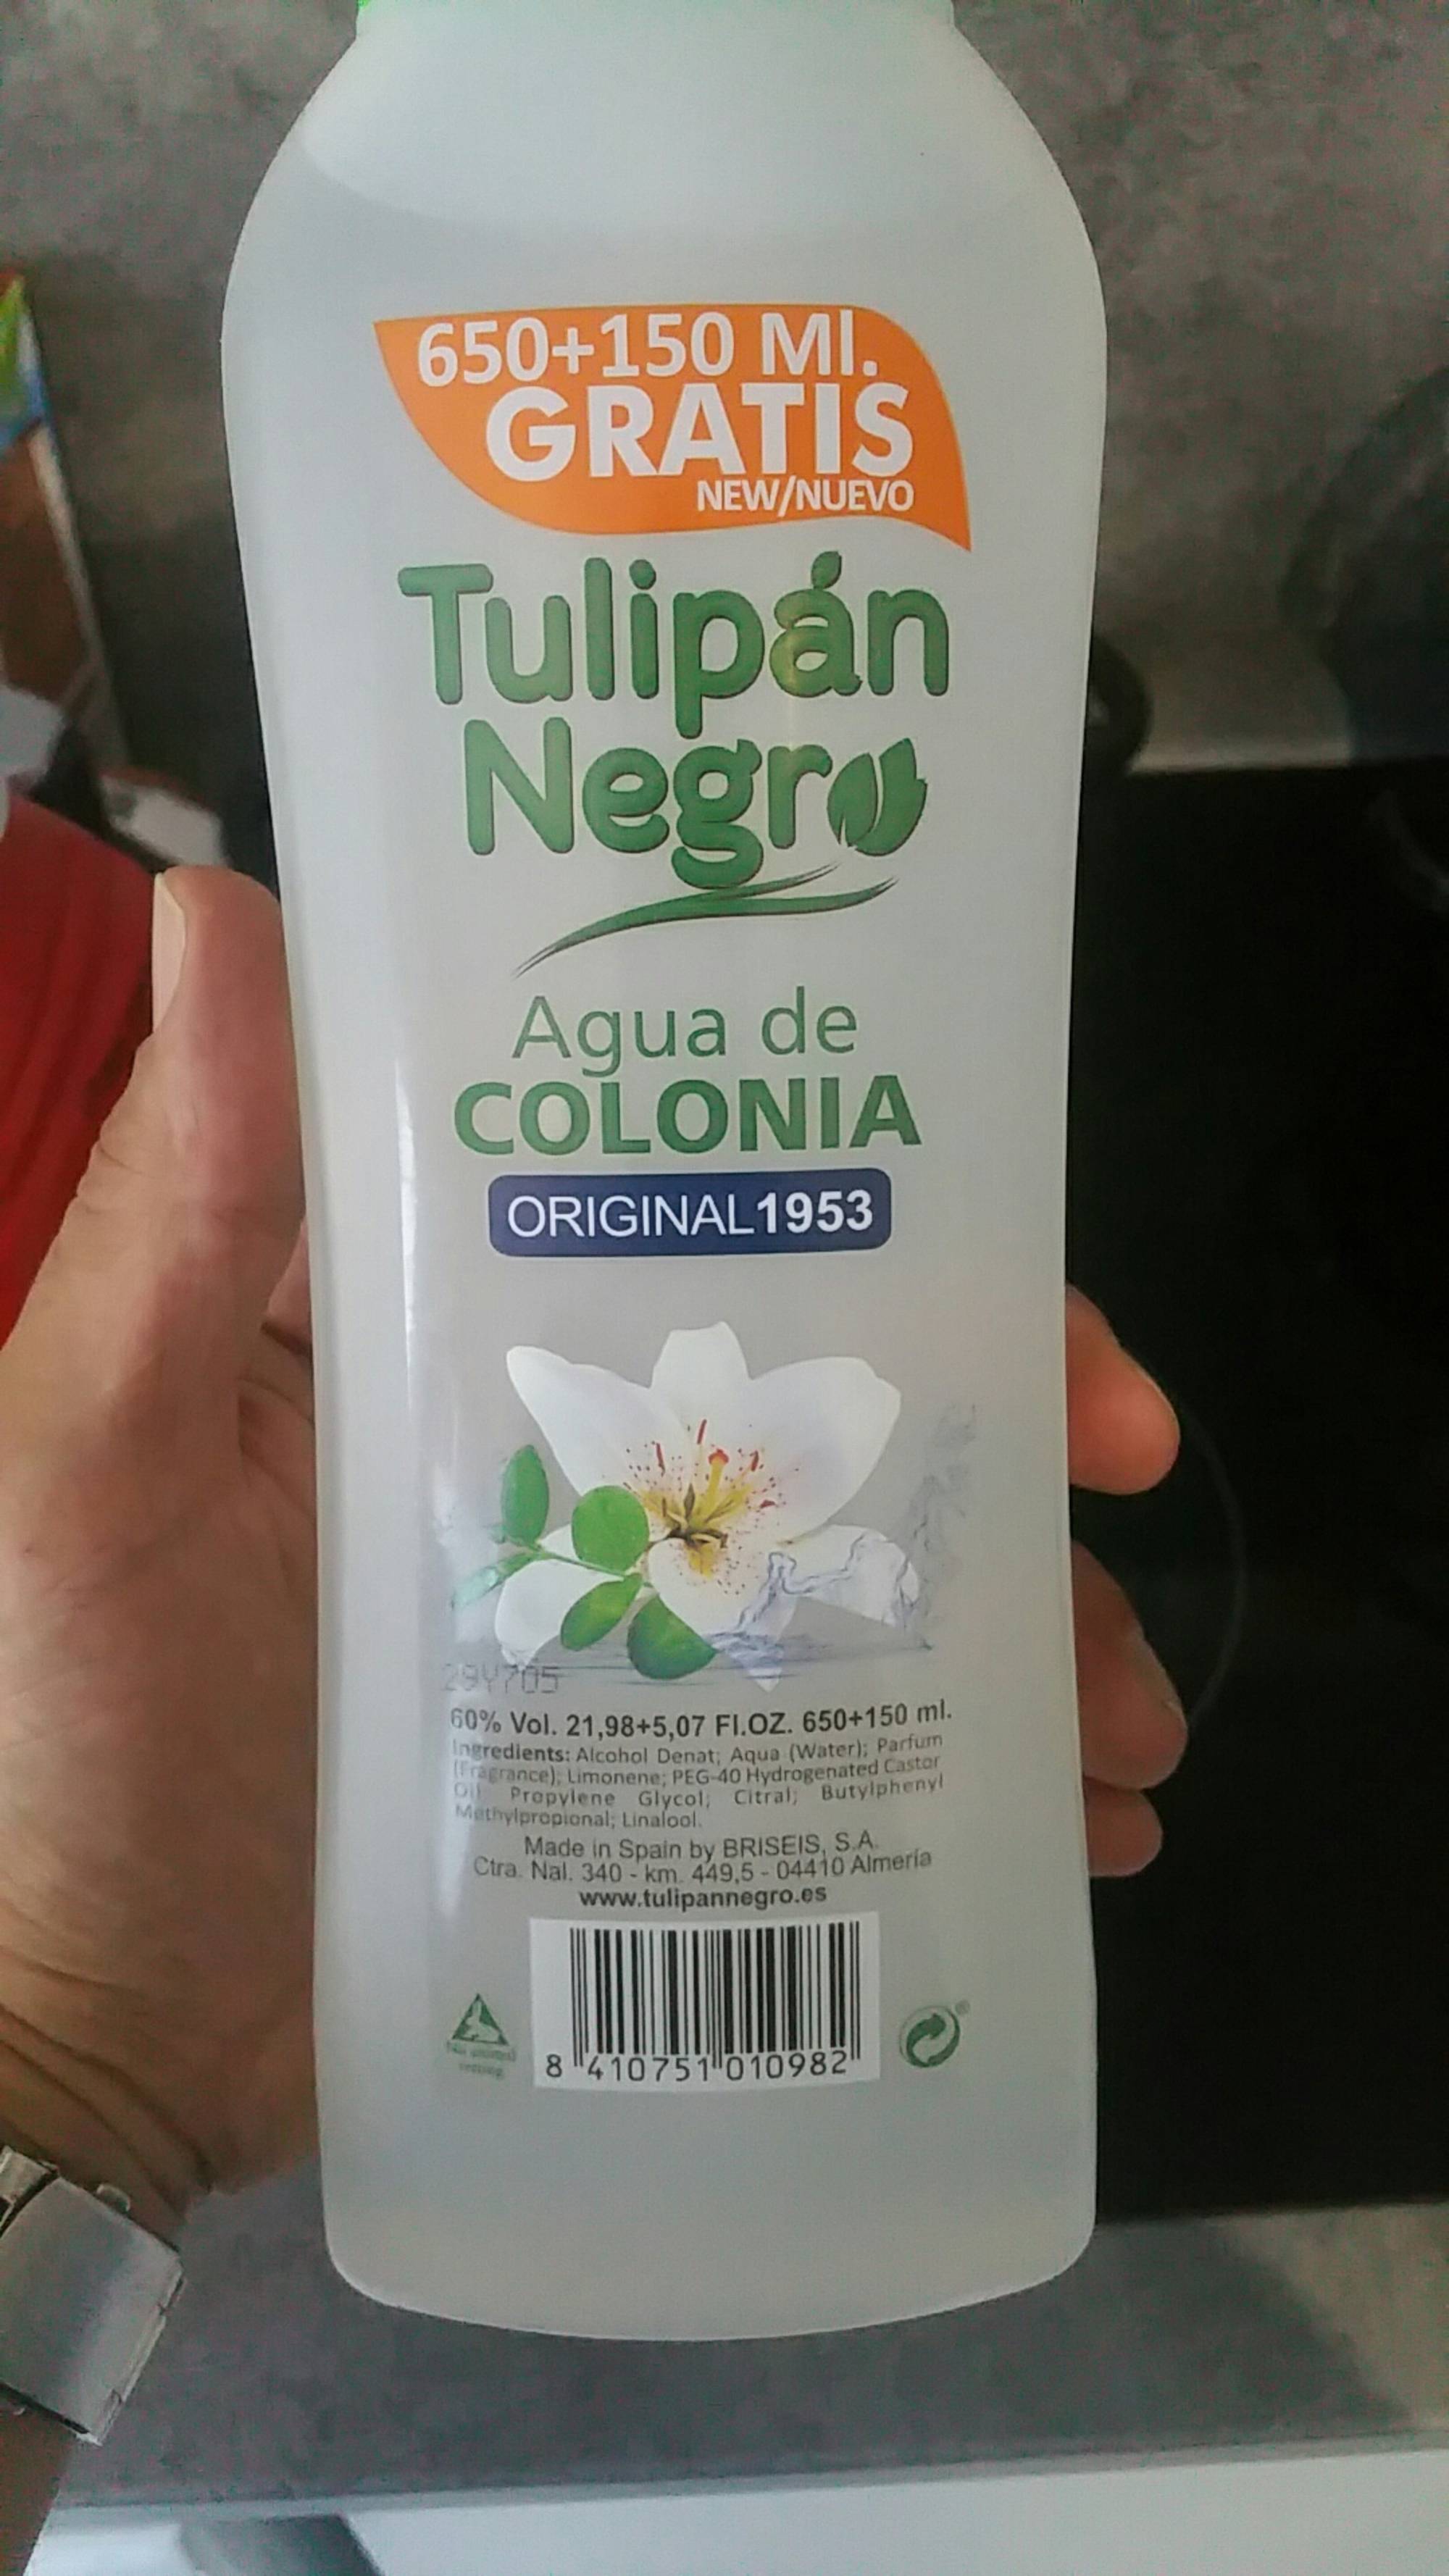 Tulipan Negro Agua de Colonia (Cologne) Original Scent Pack of 3